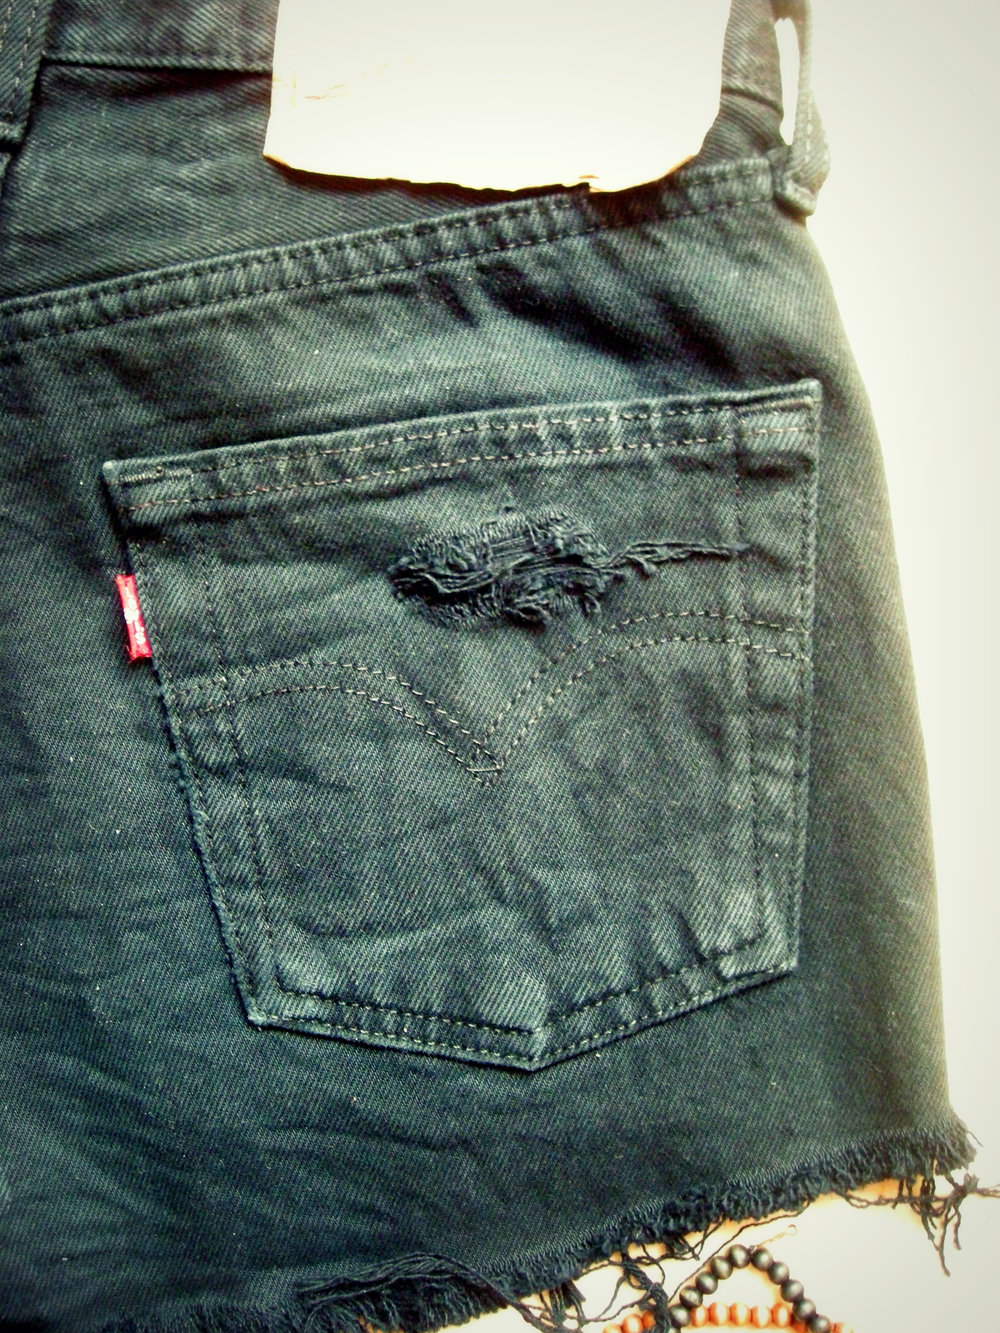 Levis 501 Shorts Vintage Jeans High Waist Blogger DIY hot pants XS-S 34 - UNIKAT